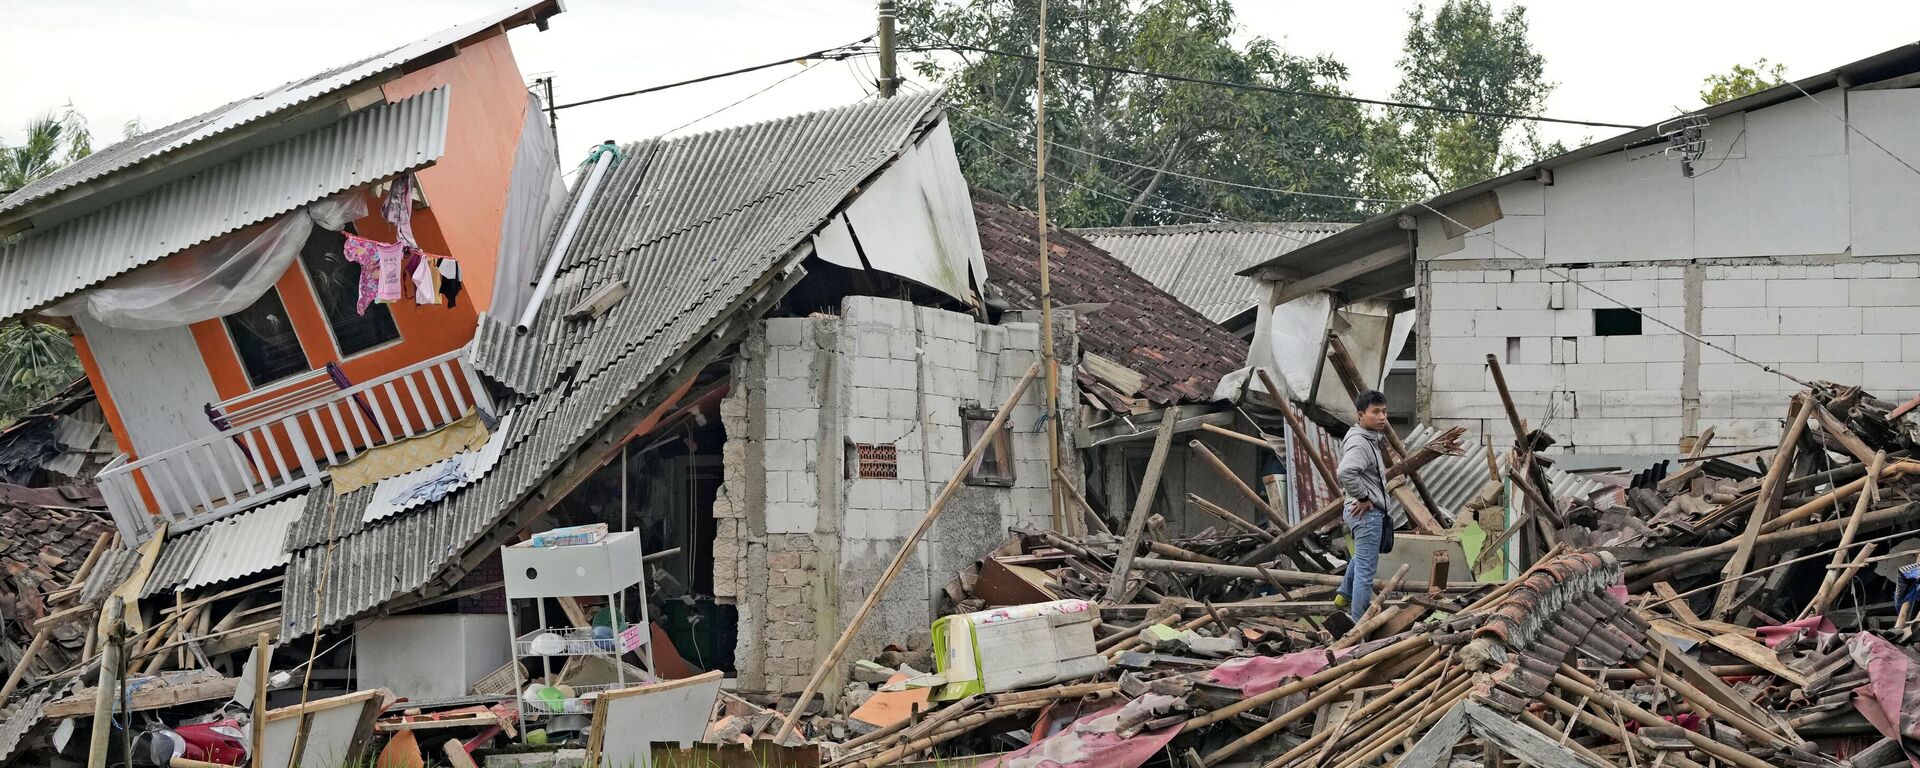 تداعيات زلزال بقوة 5.6 درجة أدى إلى مقتل ما لا يقل عن 162 شخصًا وإصابة المئات وفقد آخرين في سيانجور، إندونيسيا في 22 نوفمبر 2022. - سبوتنيك عربي, 1920, 20.12.2022